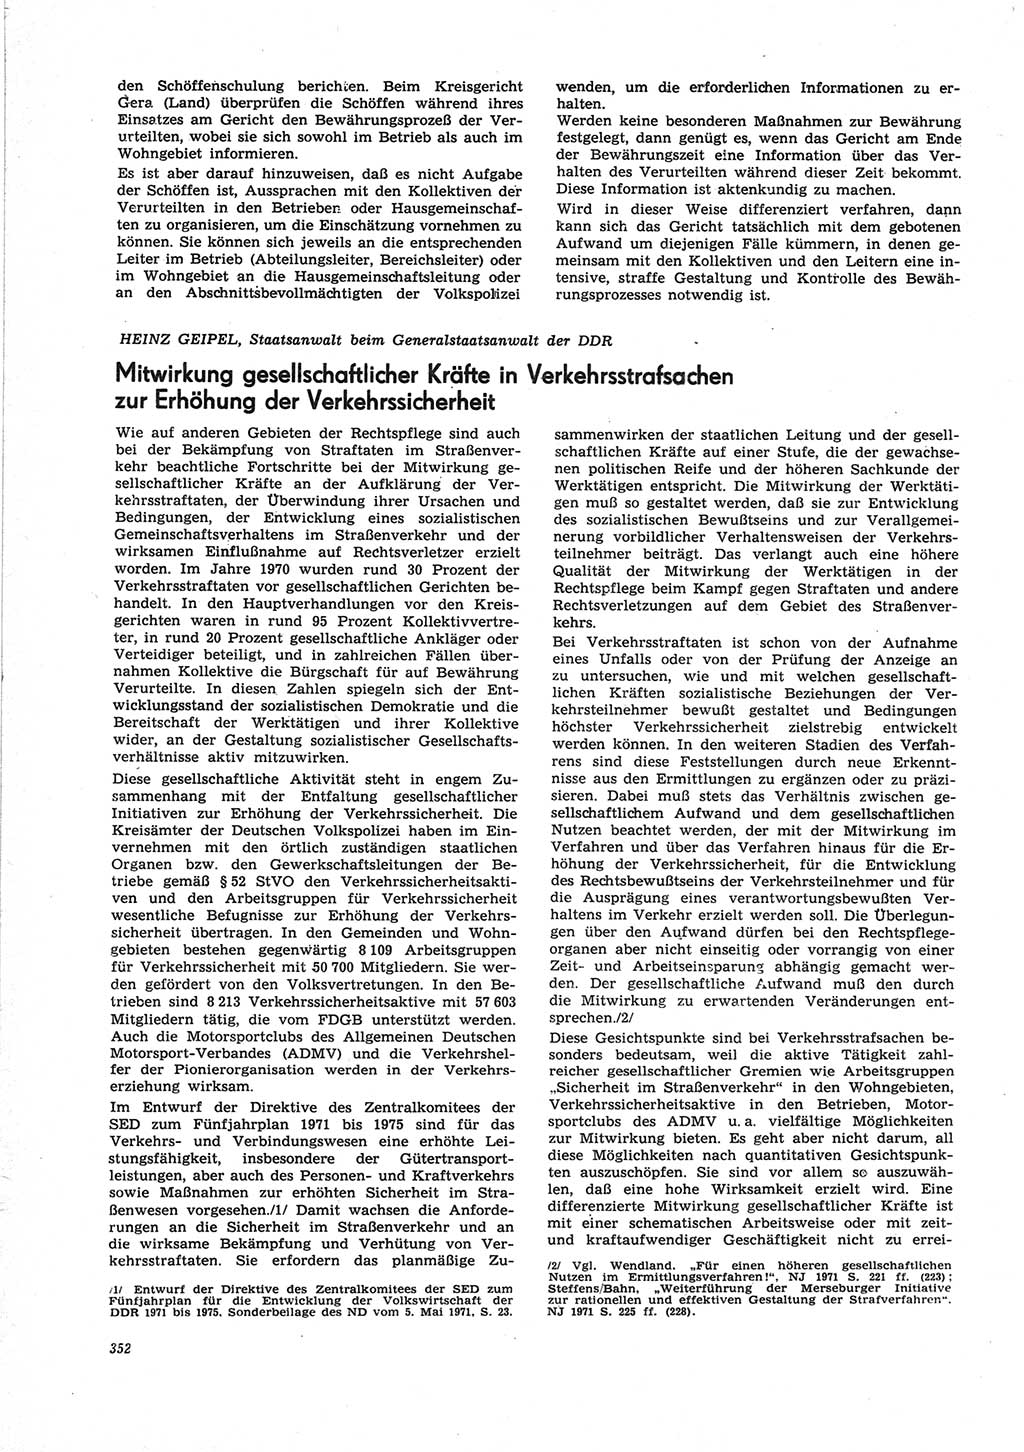 Neue Justiz (NJ), Zeitschrift für Recht und Rechtswissenschaft [Deutsche Demokratische Republik (DDR)], 25. Jahrgang 1971, Seite 352 (NJ DDR 1971, S. 352)